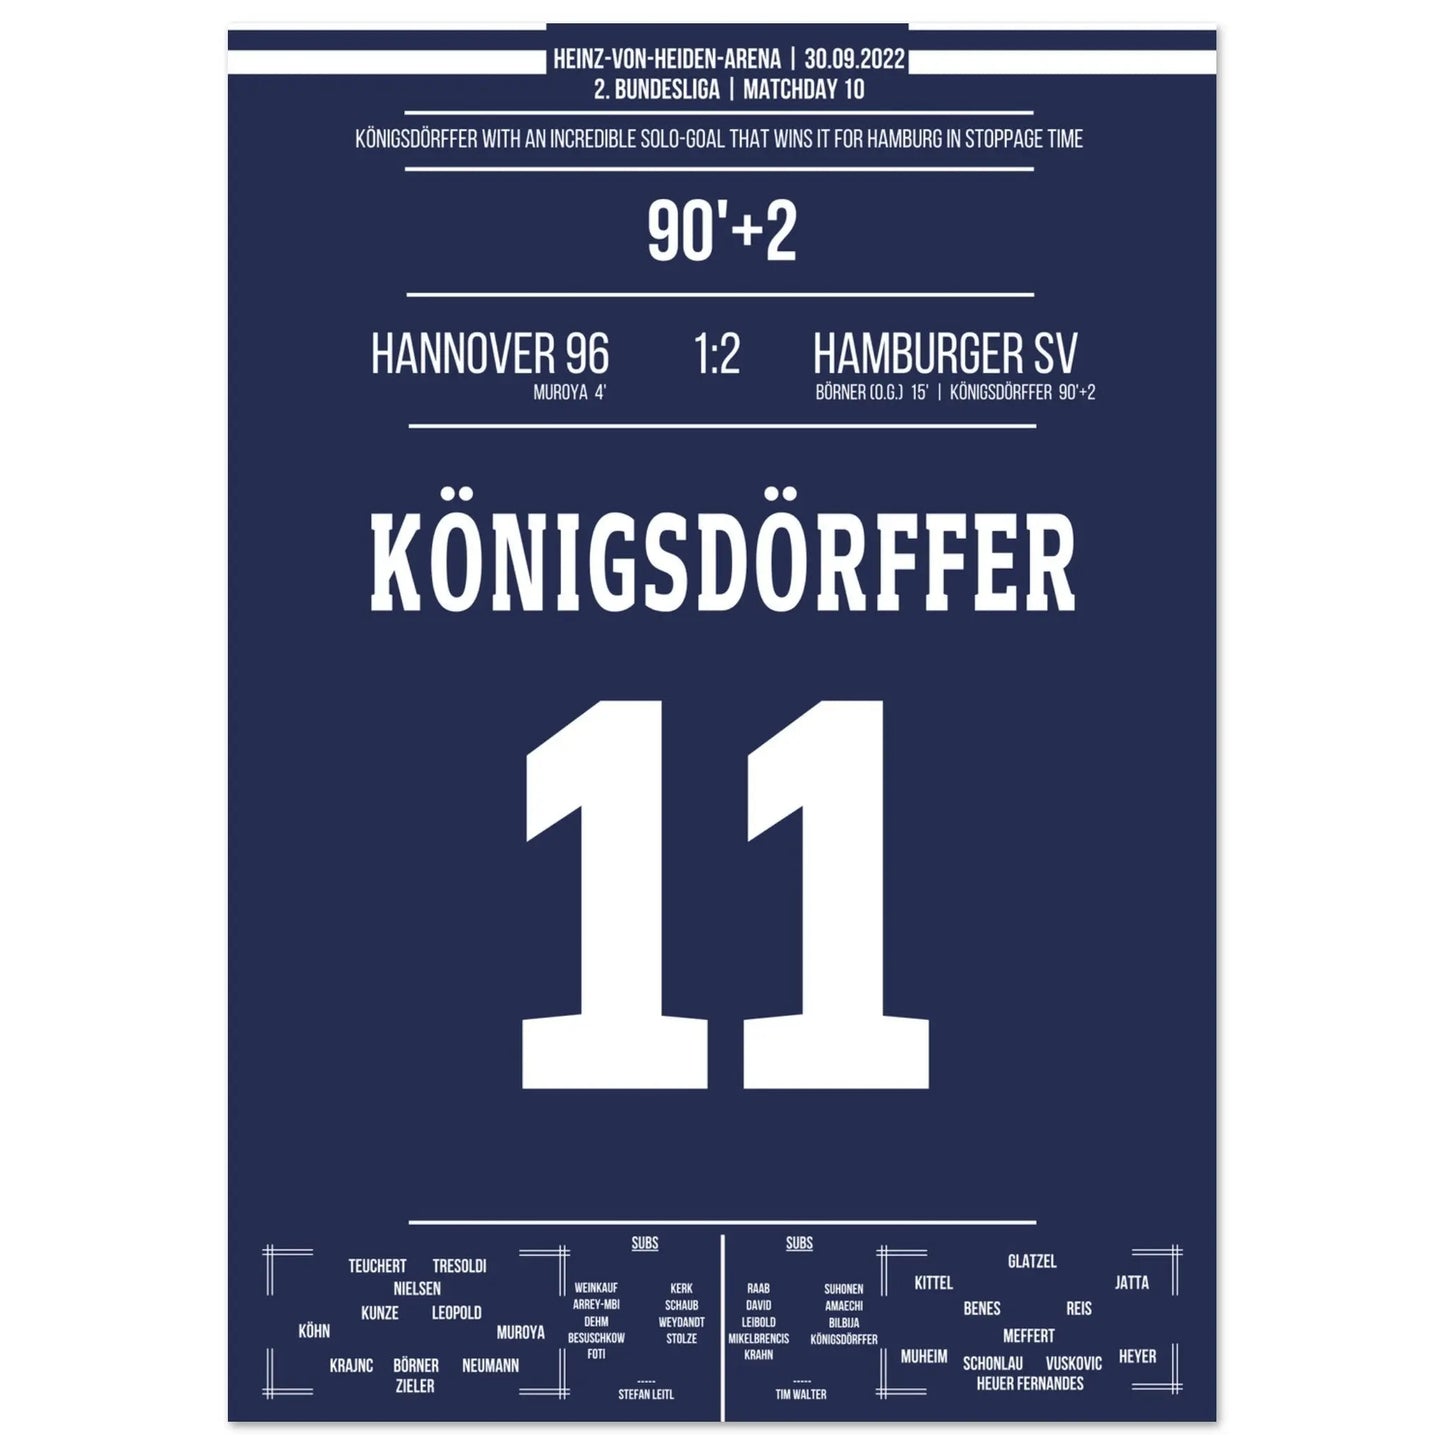 Königsdörffer's world-class solo for the winning goal in Hanover